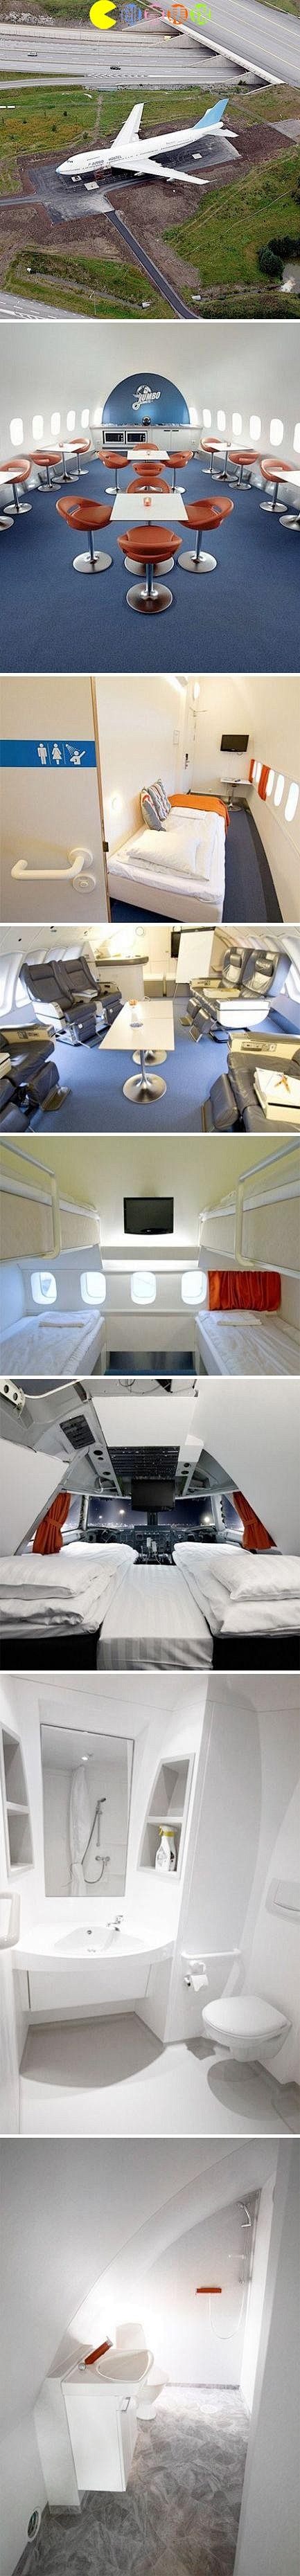 波音747被改造成了一个现代化的豪华酒店...